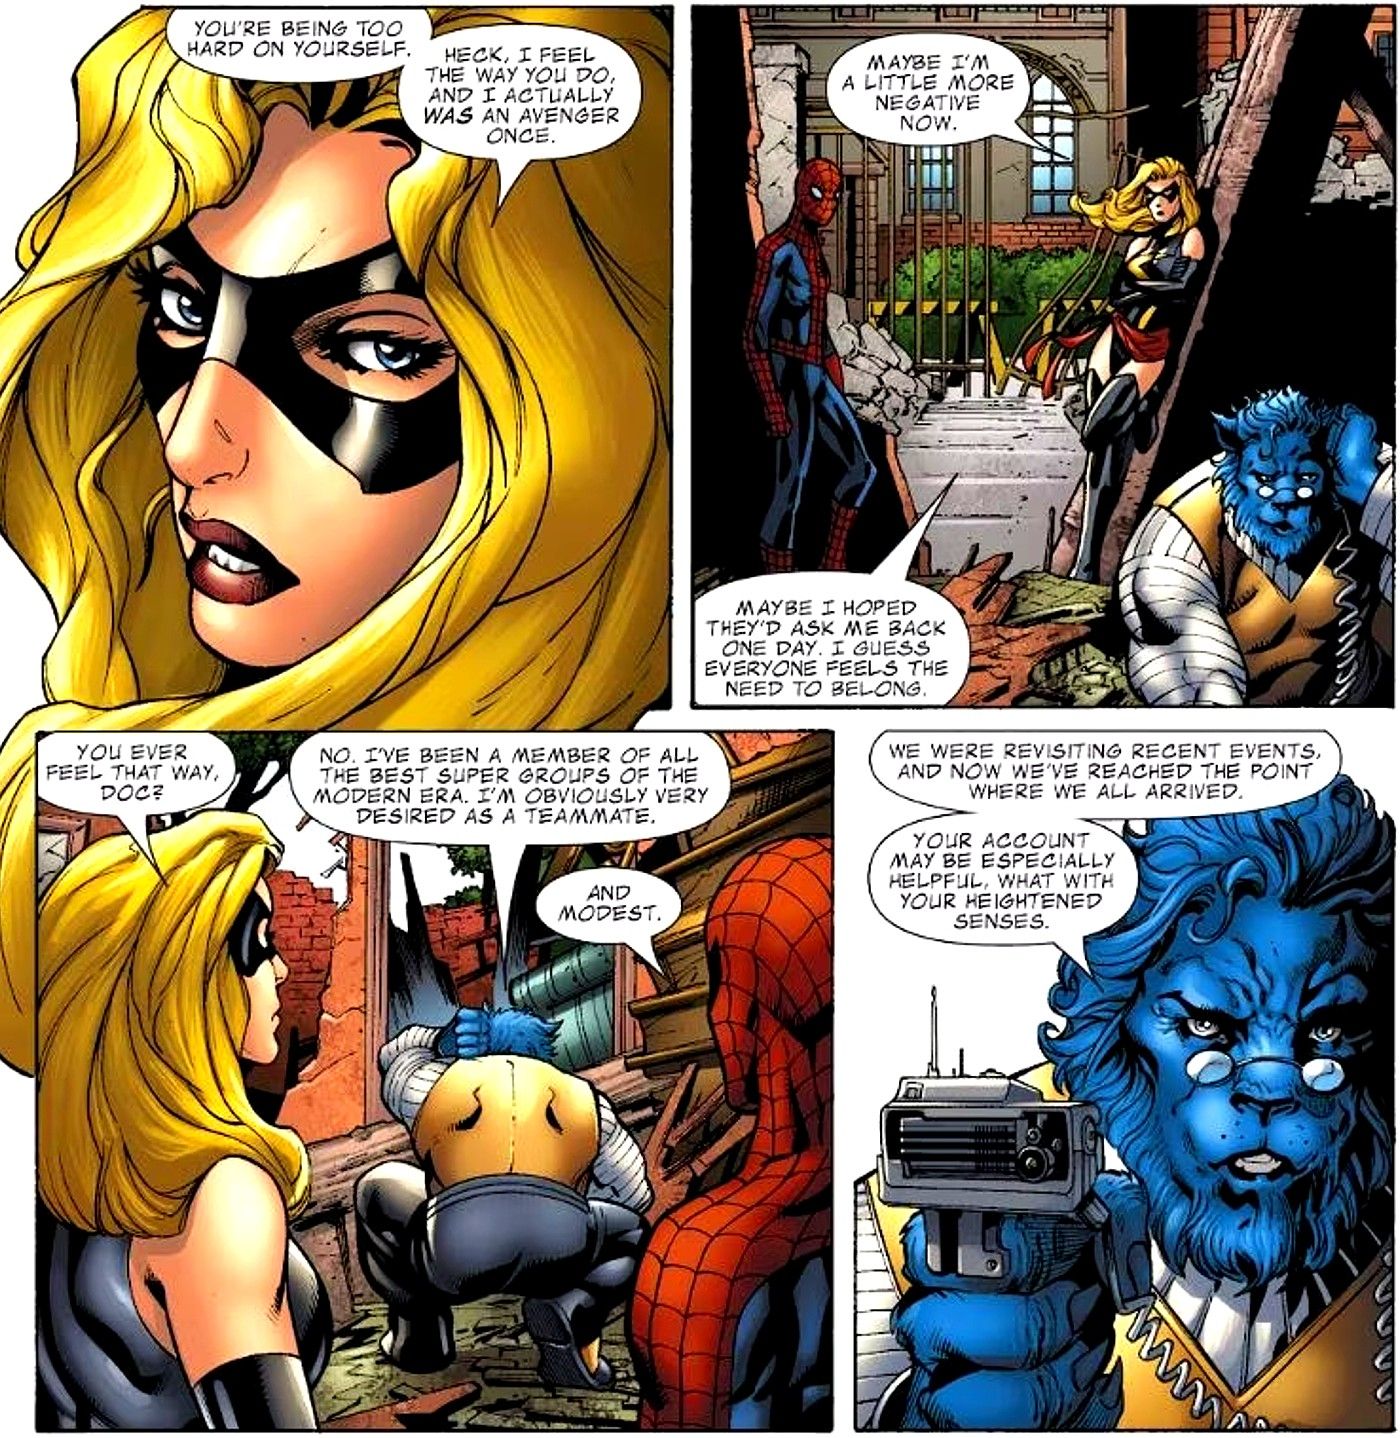 An Original X-Men Member Explains Why He’s Objectively Marvel’s Best Hero